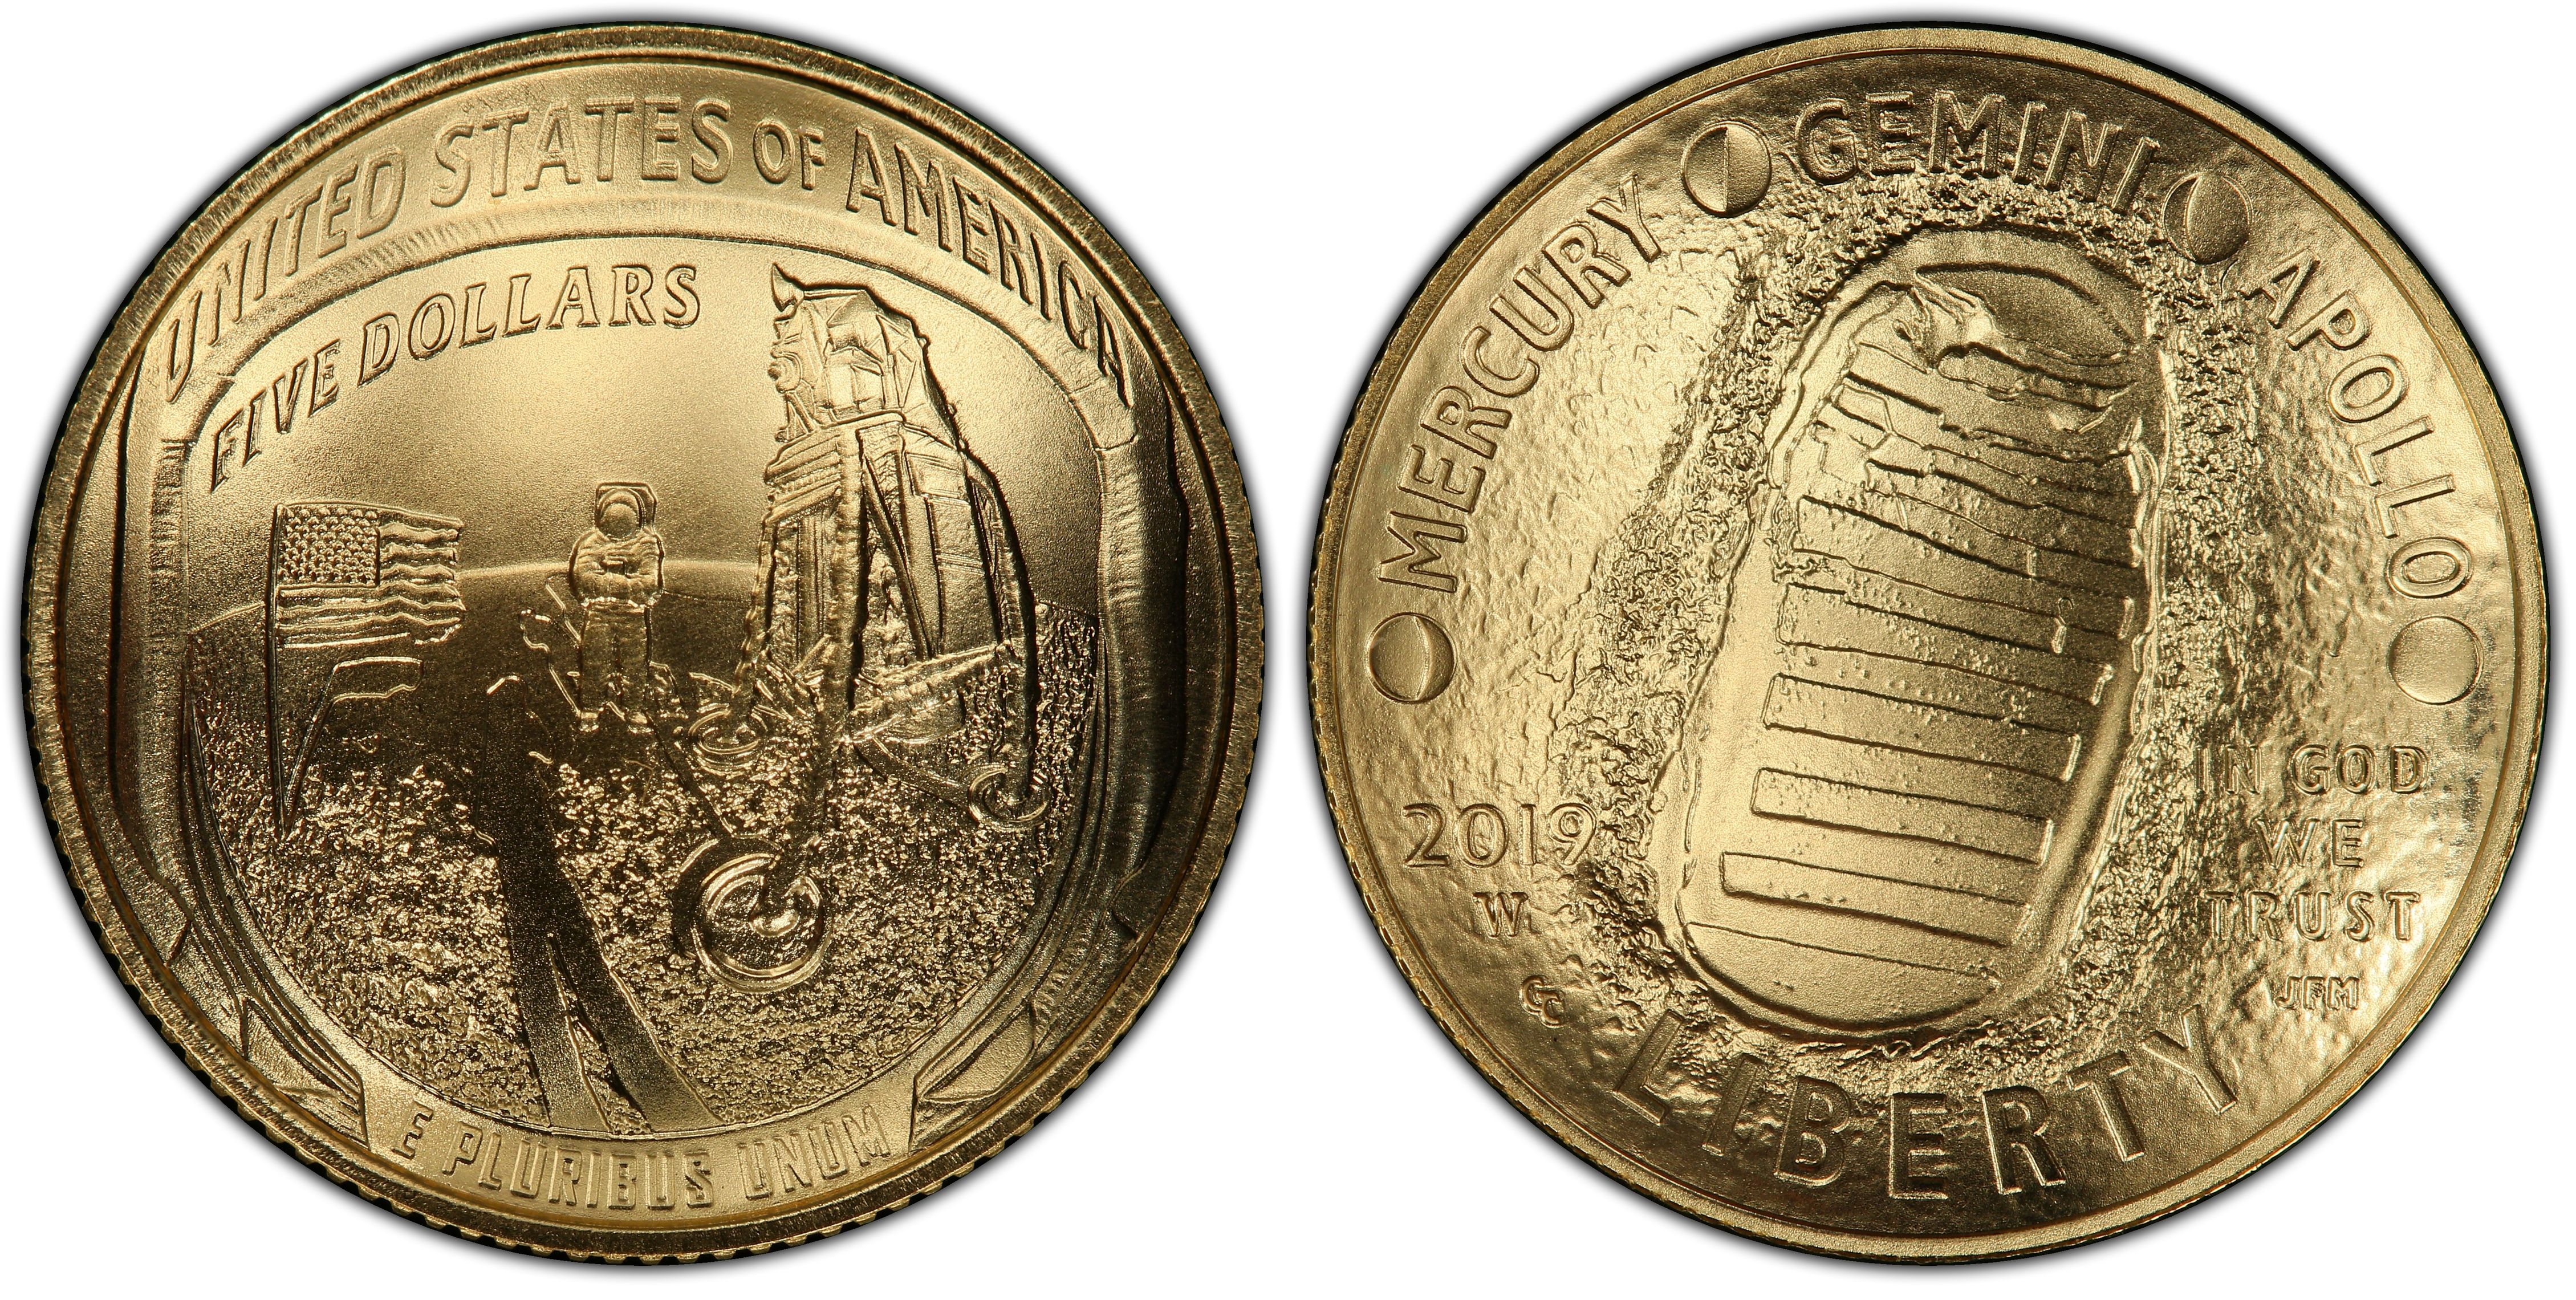 2019 W Apollo 11 50th Anniversary $5 Gold Commemorative Proof Coin OGP SKU56544 